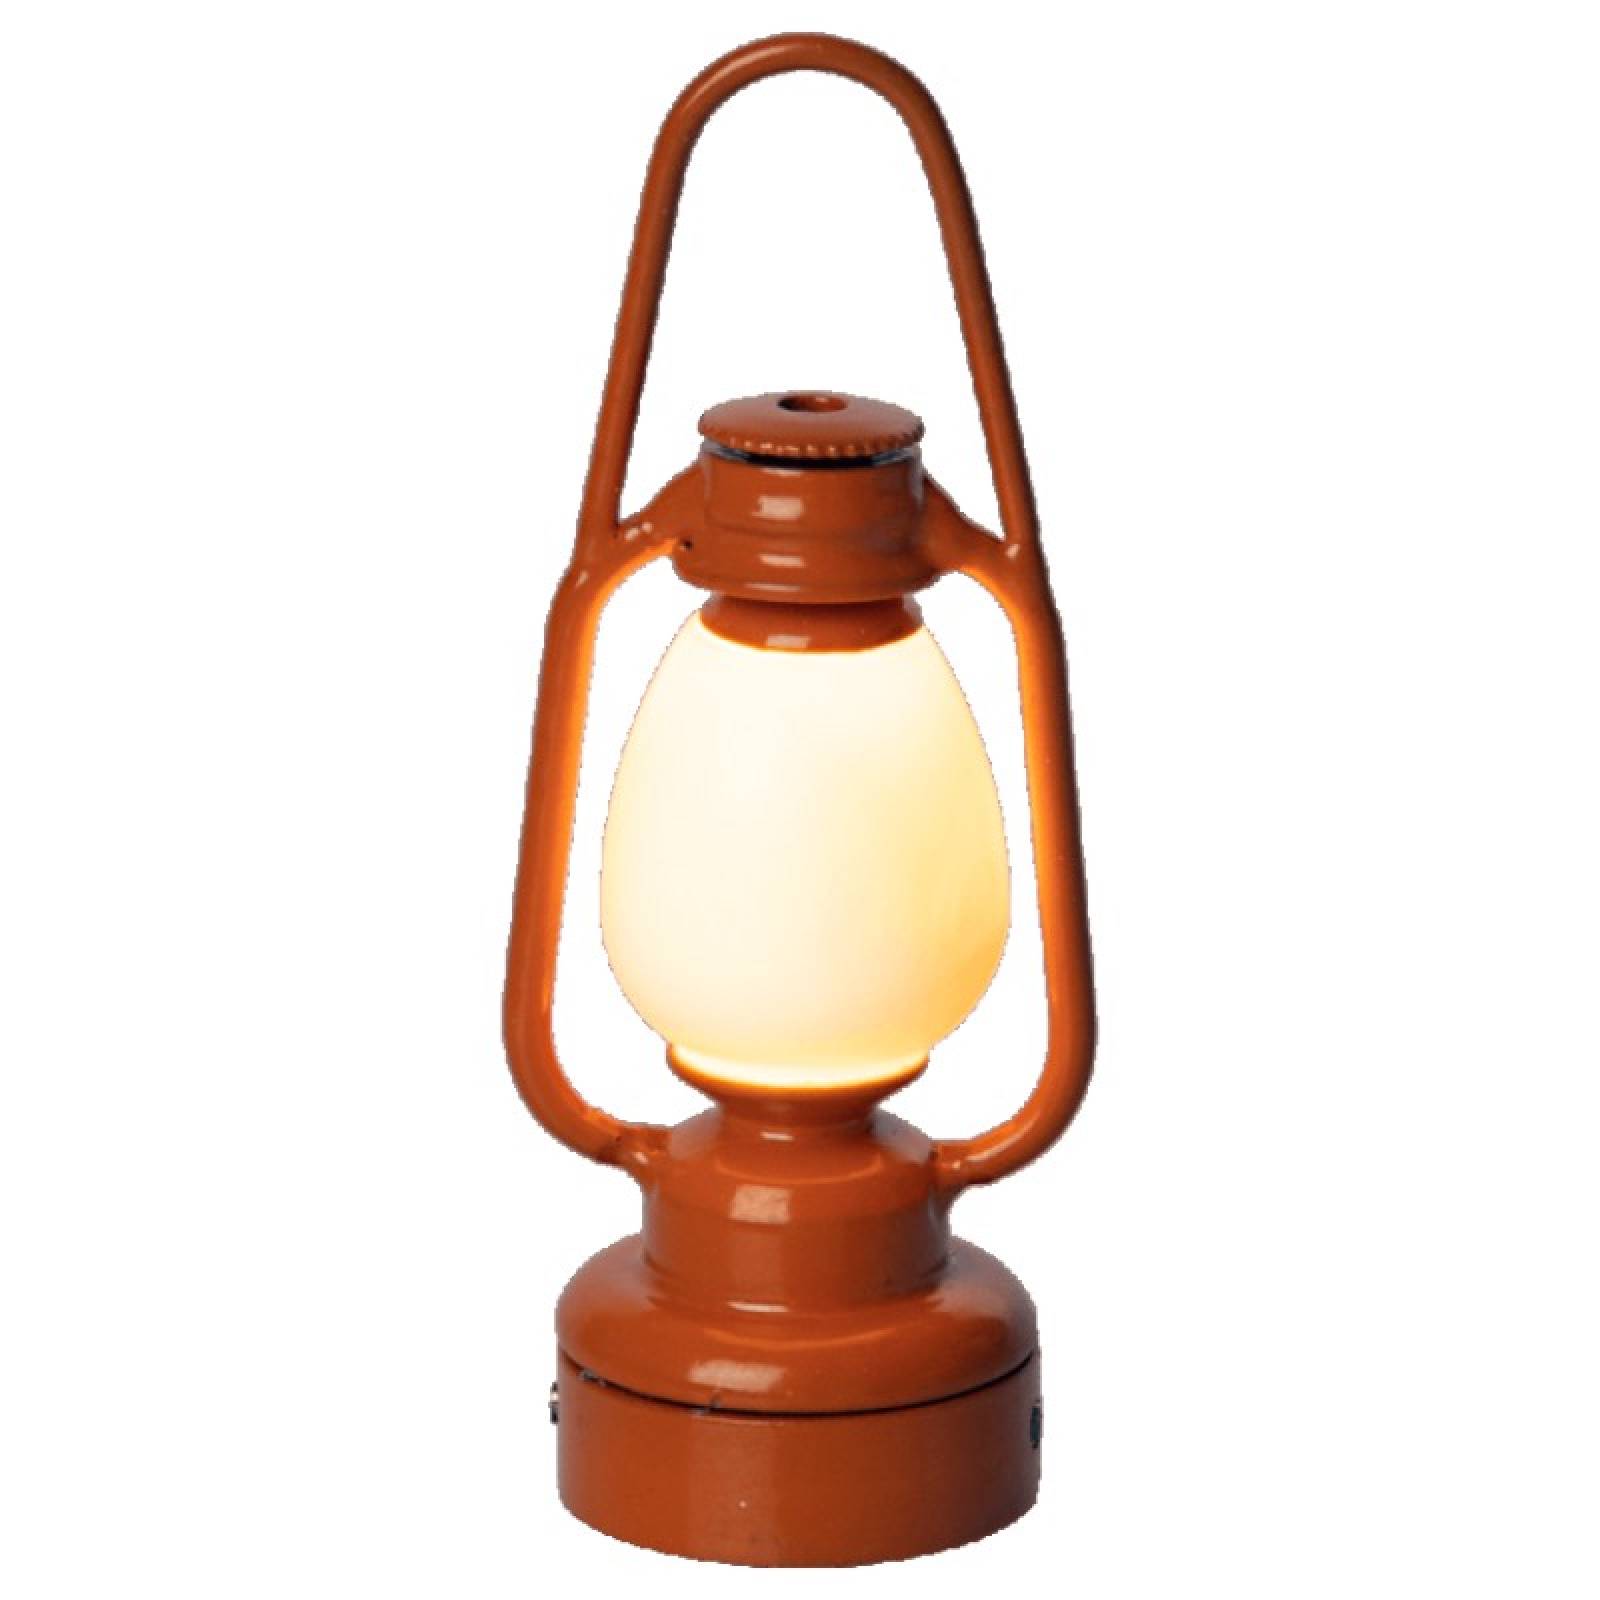 Miniature Vintage Lantern In Orange By Maileg 3+